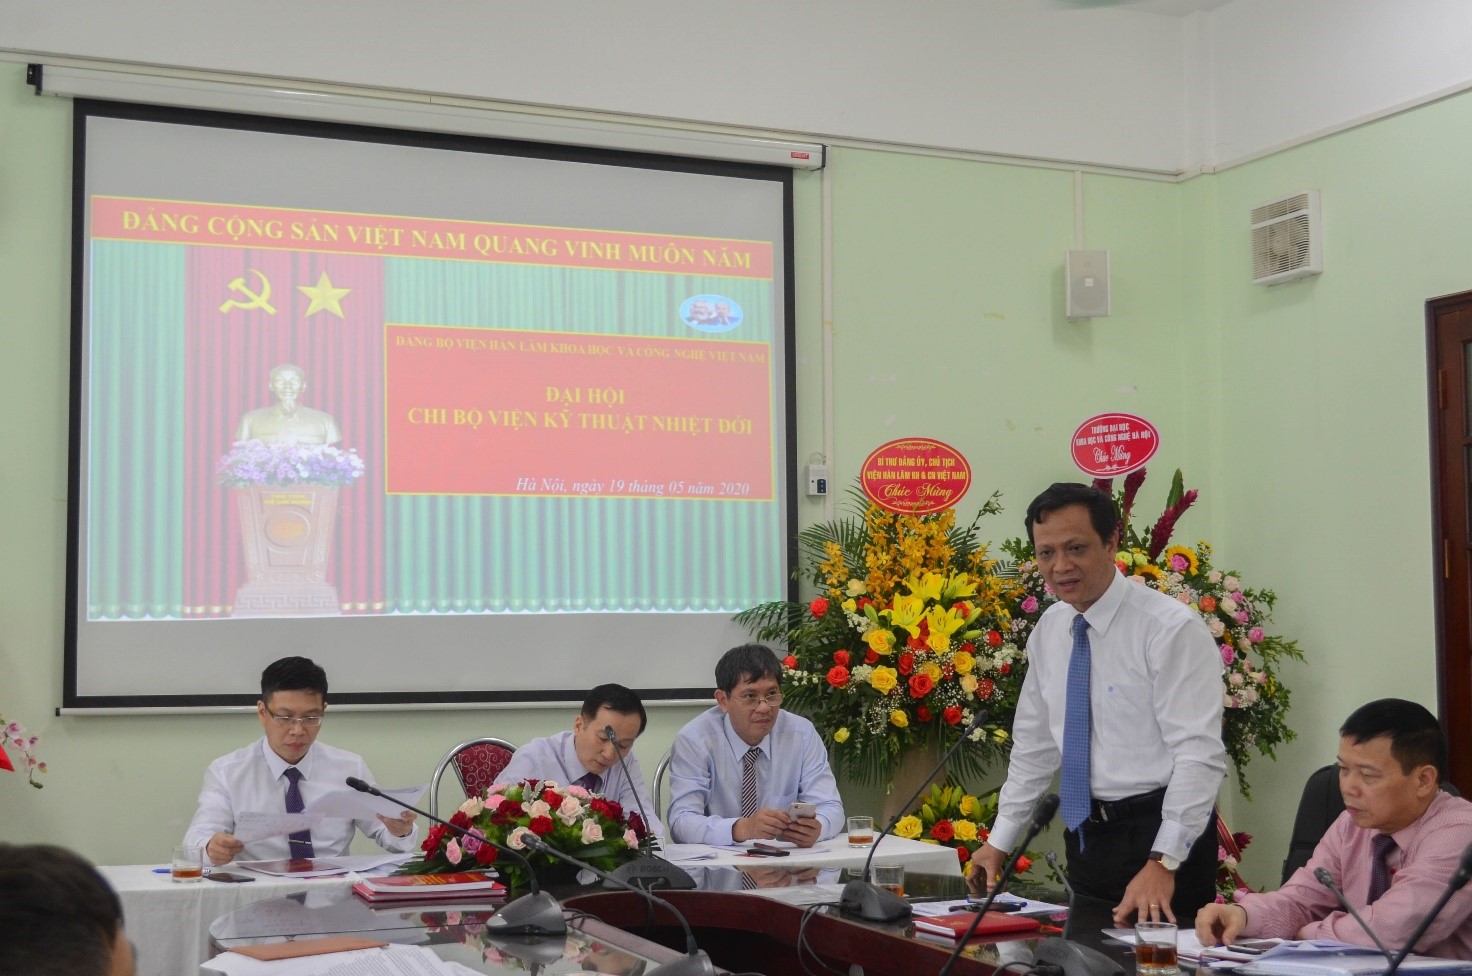 Đồng chí Phan Ngọc Minh - Phó Chủ tịch Viện Hàn lâm Khoa học và Công nghệ Việt Nam, ủy viên Ban Thường vụ Đảng ủy Viện Hàn lâm KHCNVN phát biểu chỉ đạo tại Đại hội